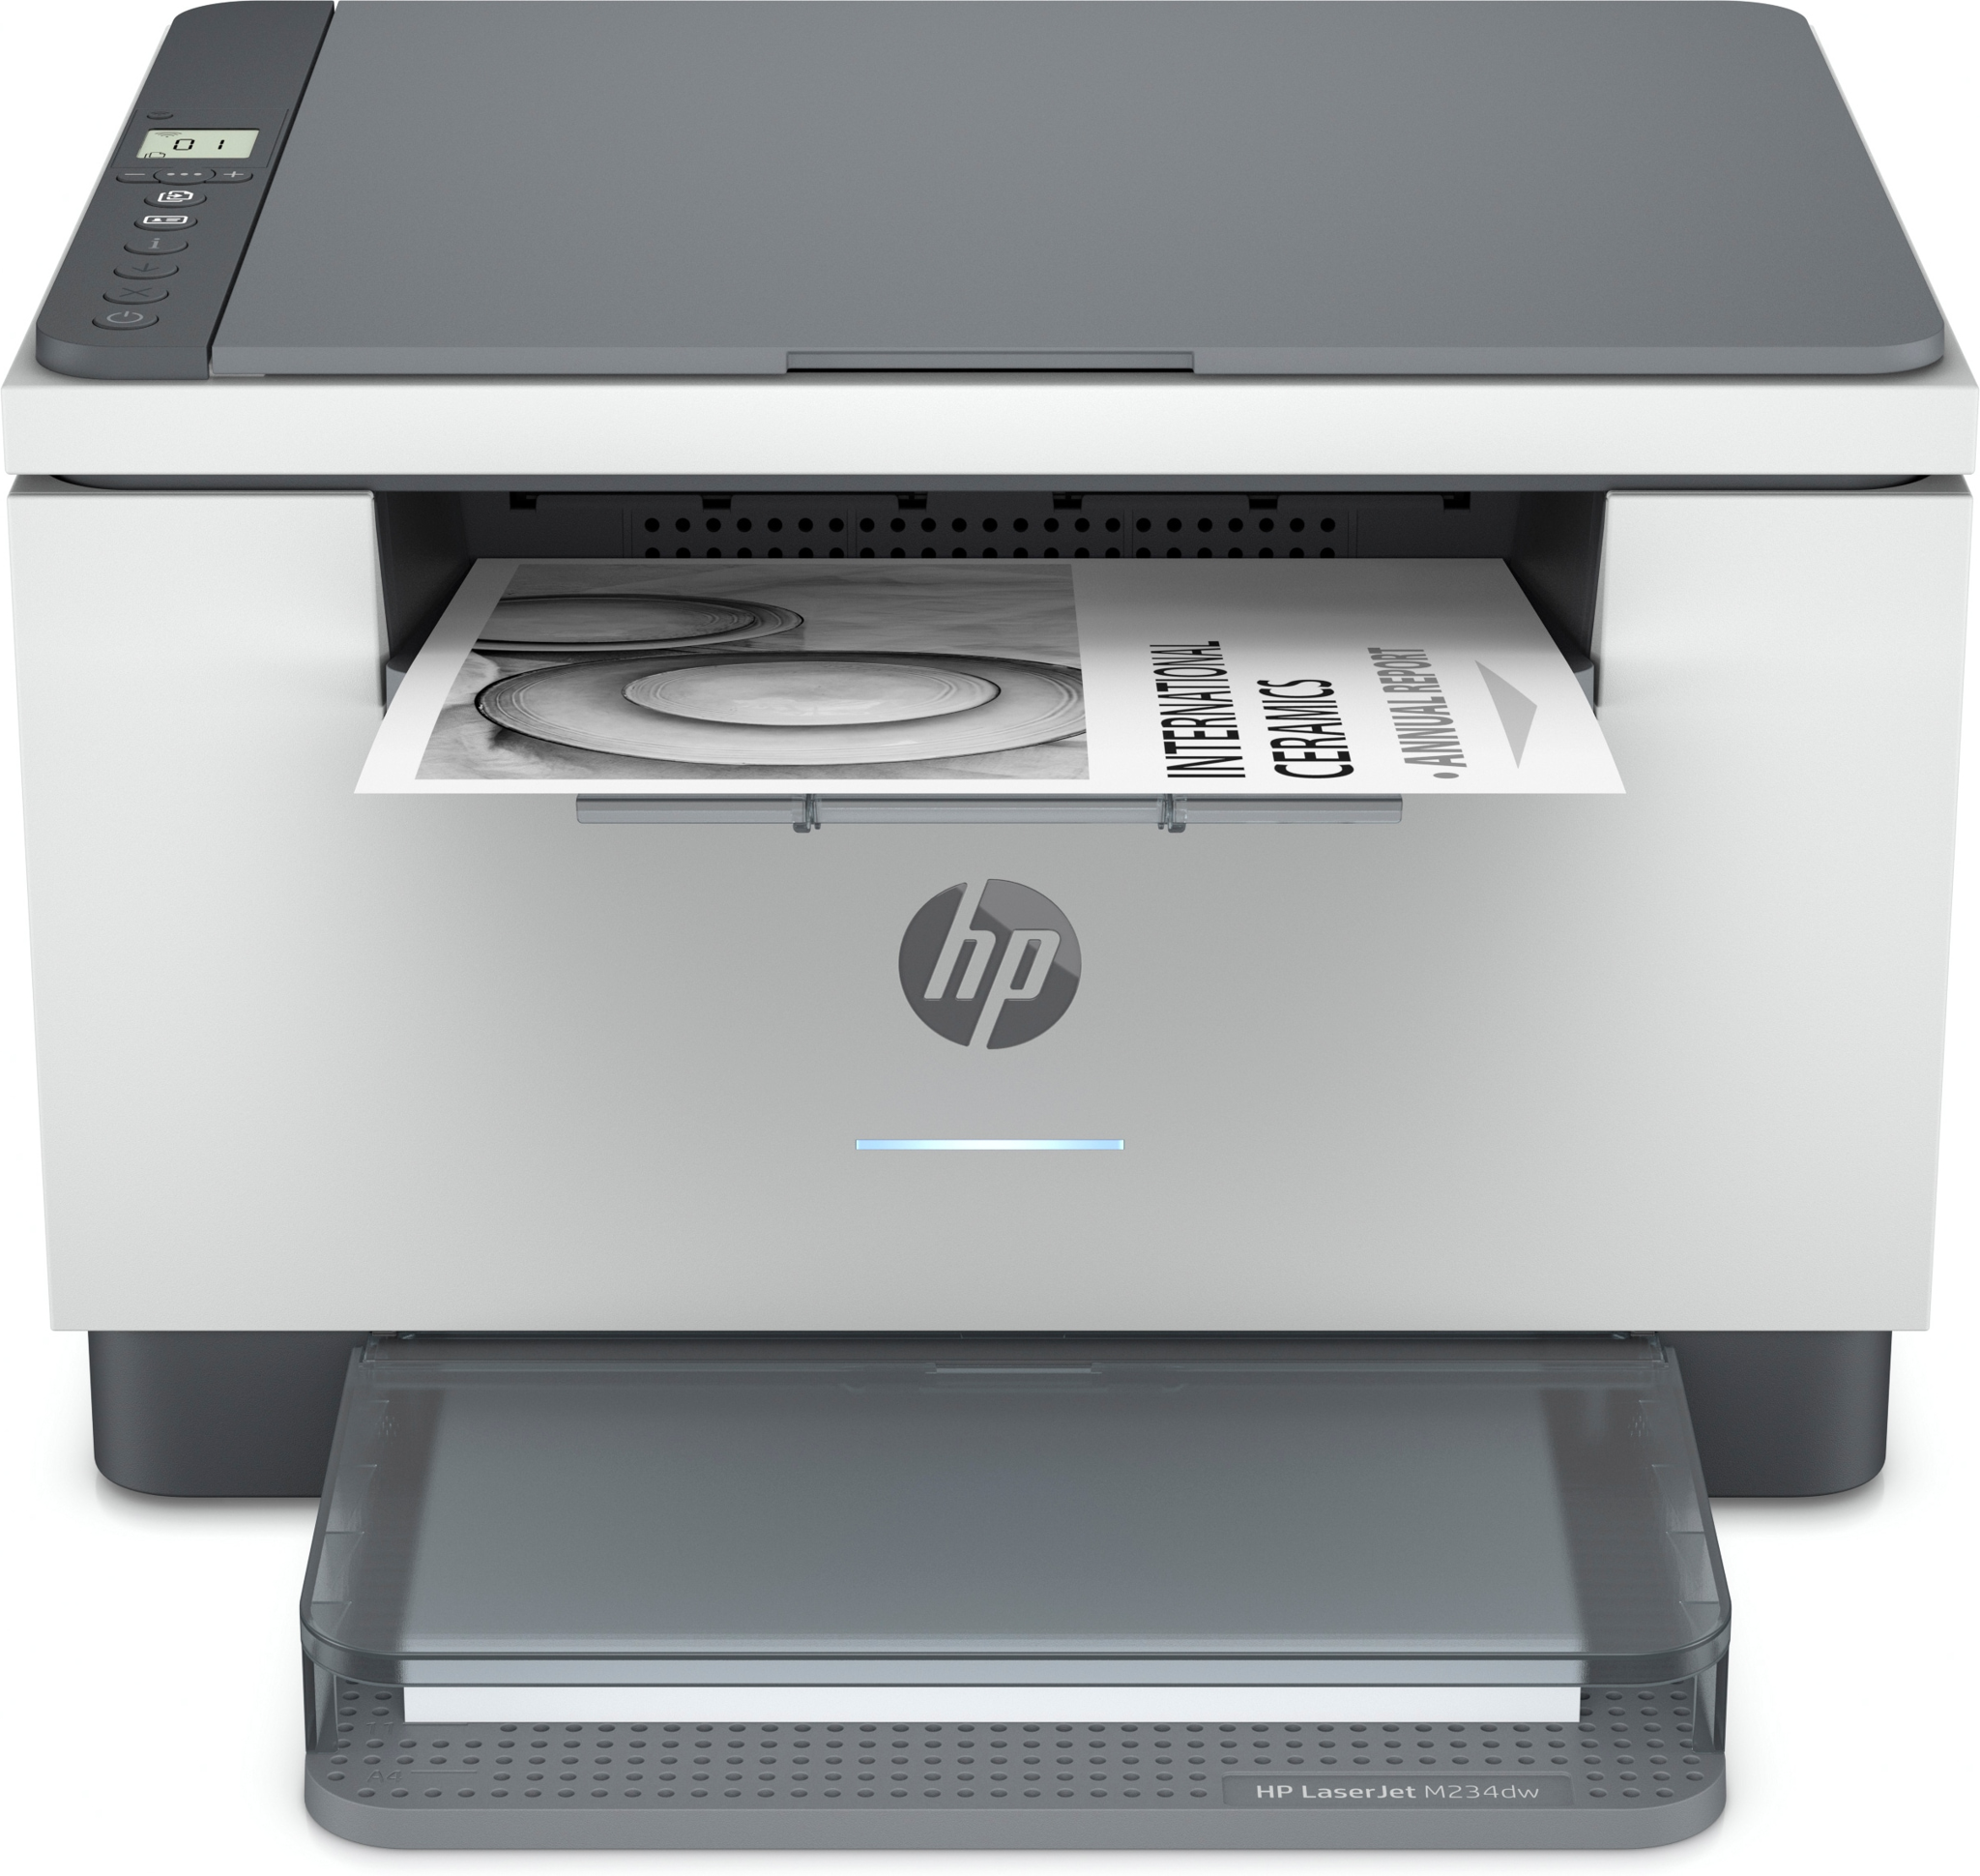 Bild von HP LaserJet MFP M234dw Drucker - Schwarzweiß - Drucker für Kleine Büros - Drucken - Kopieren - Scannen - beidseitiger Druck; Scannen an E-Mail; Scannen an PDF - Laser - Monodruck - 600 x 600 DPI - A4 - Direktdruck - Grau